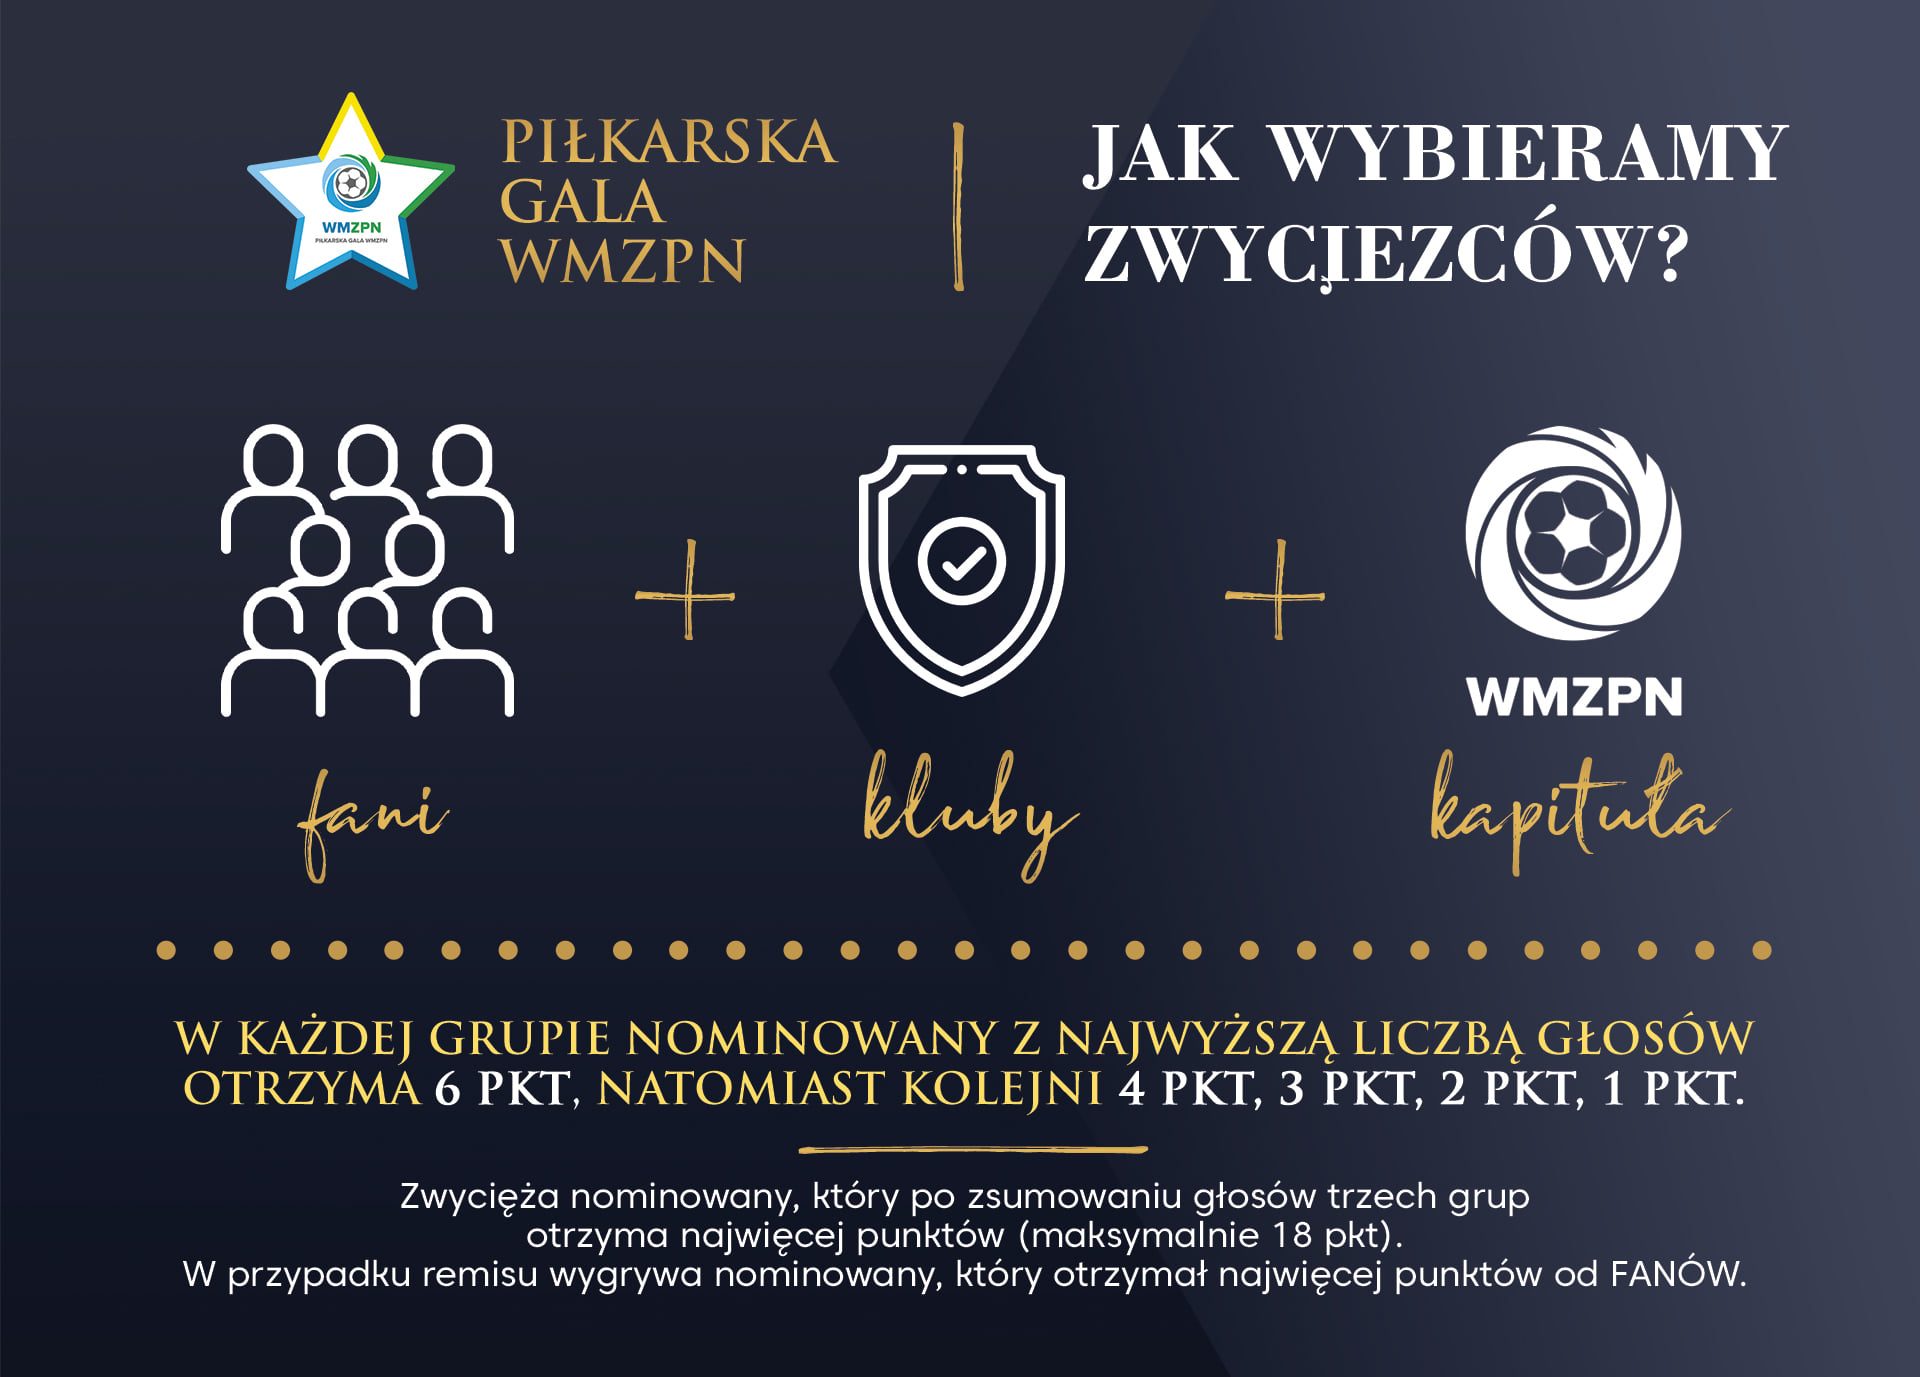 Piłkarska Gala WMZPN: Zagłosuj na naszych!